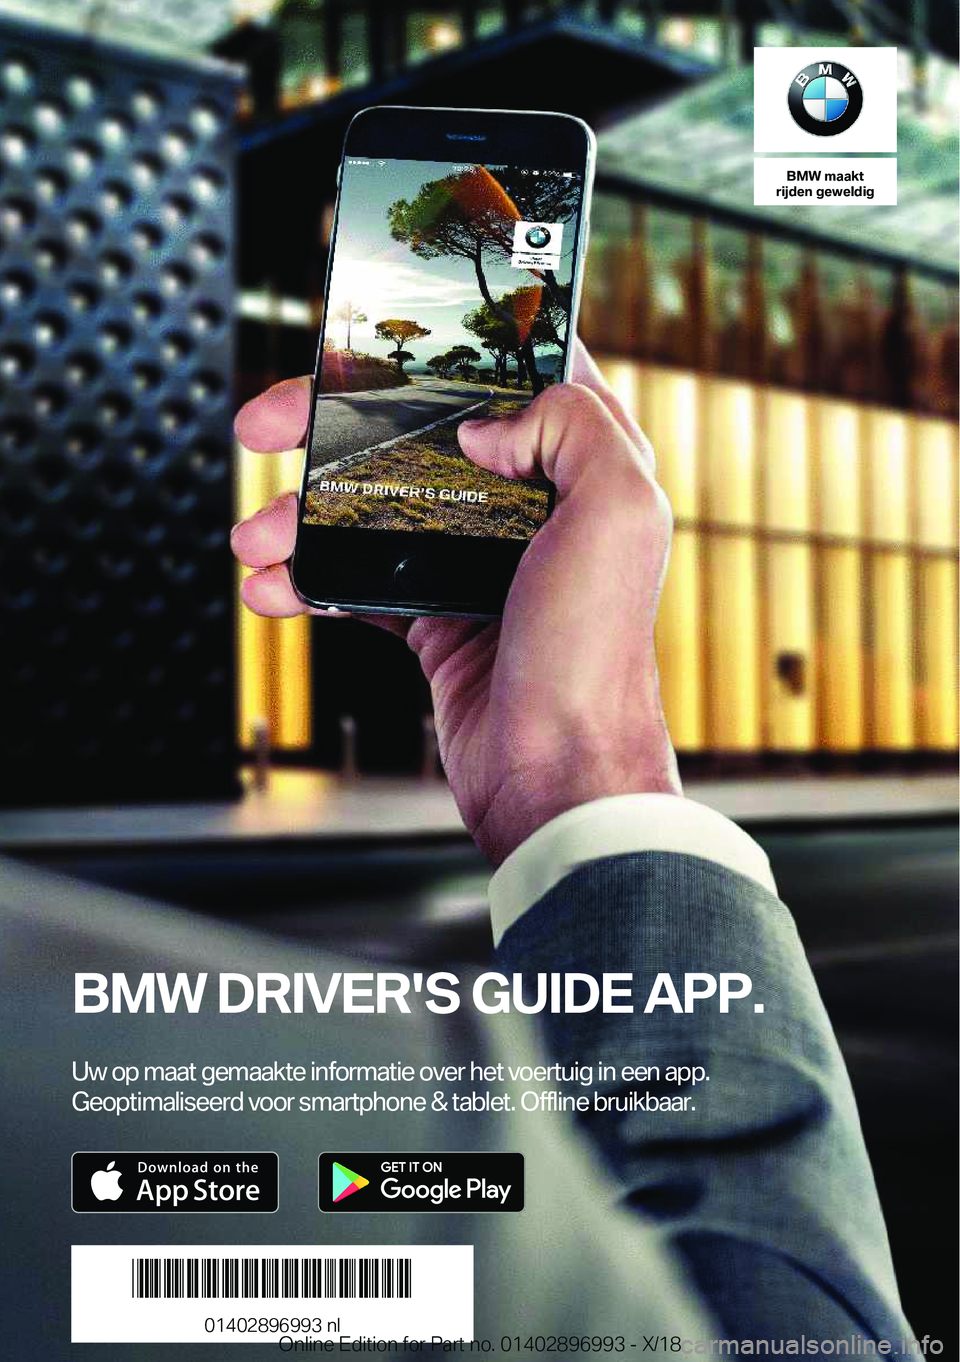 BMW Z4 2019  Instructieboekjes (in Dutch) �B�M�W��m�a�a�k�t
�r�i�j�d�e�n��g�e�w�e�l�d�i�g
�B�M�W��D�R�I�V�E�R�'�S��G�U�I�D�E��A�P�P�.
�U�w��o�p��m�a�a�t��g�e�m�a�a�k�t�e��i�n�f�o�r�m�a�t�i�e��o�v�e�r��h�e�t��v�o�e�r�t�u�i�g��